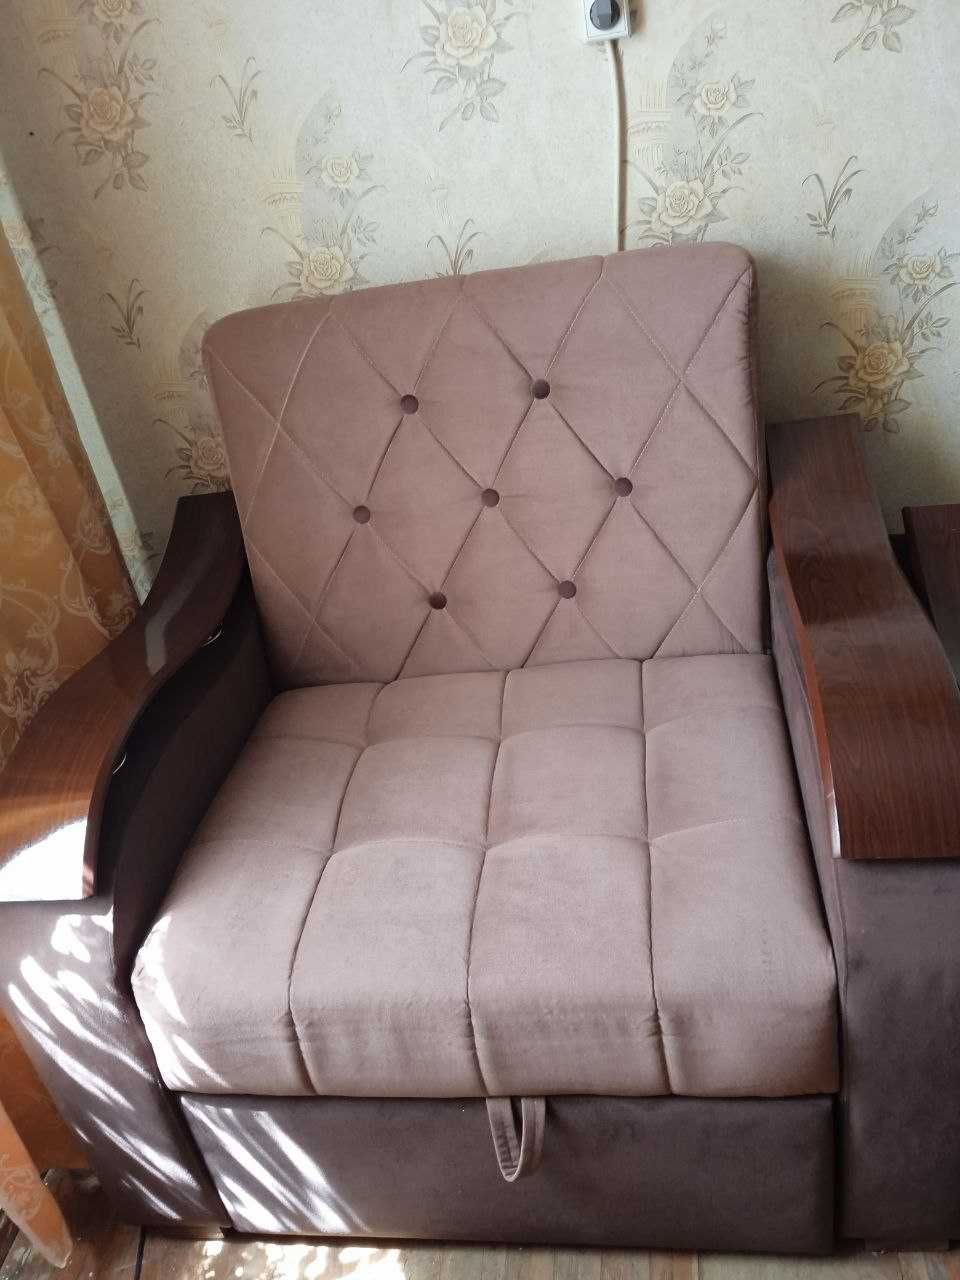 Продам кресло-кровать, ширина 75 см, длина 180 см за 100у.е